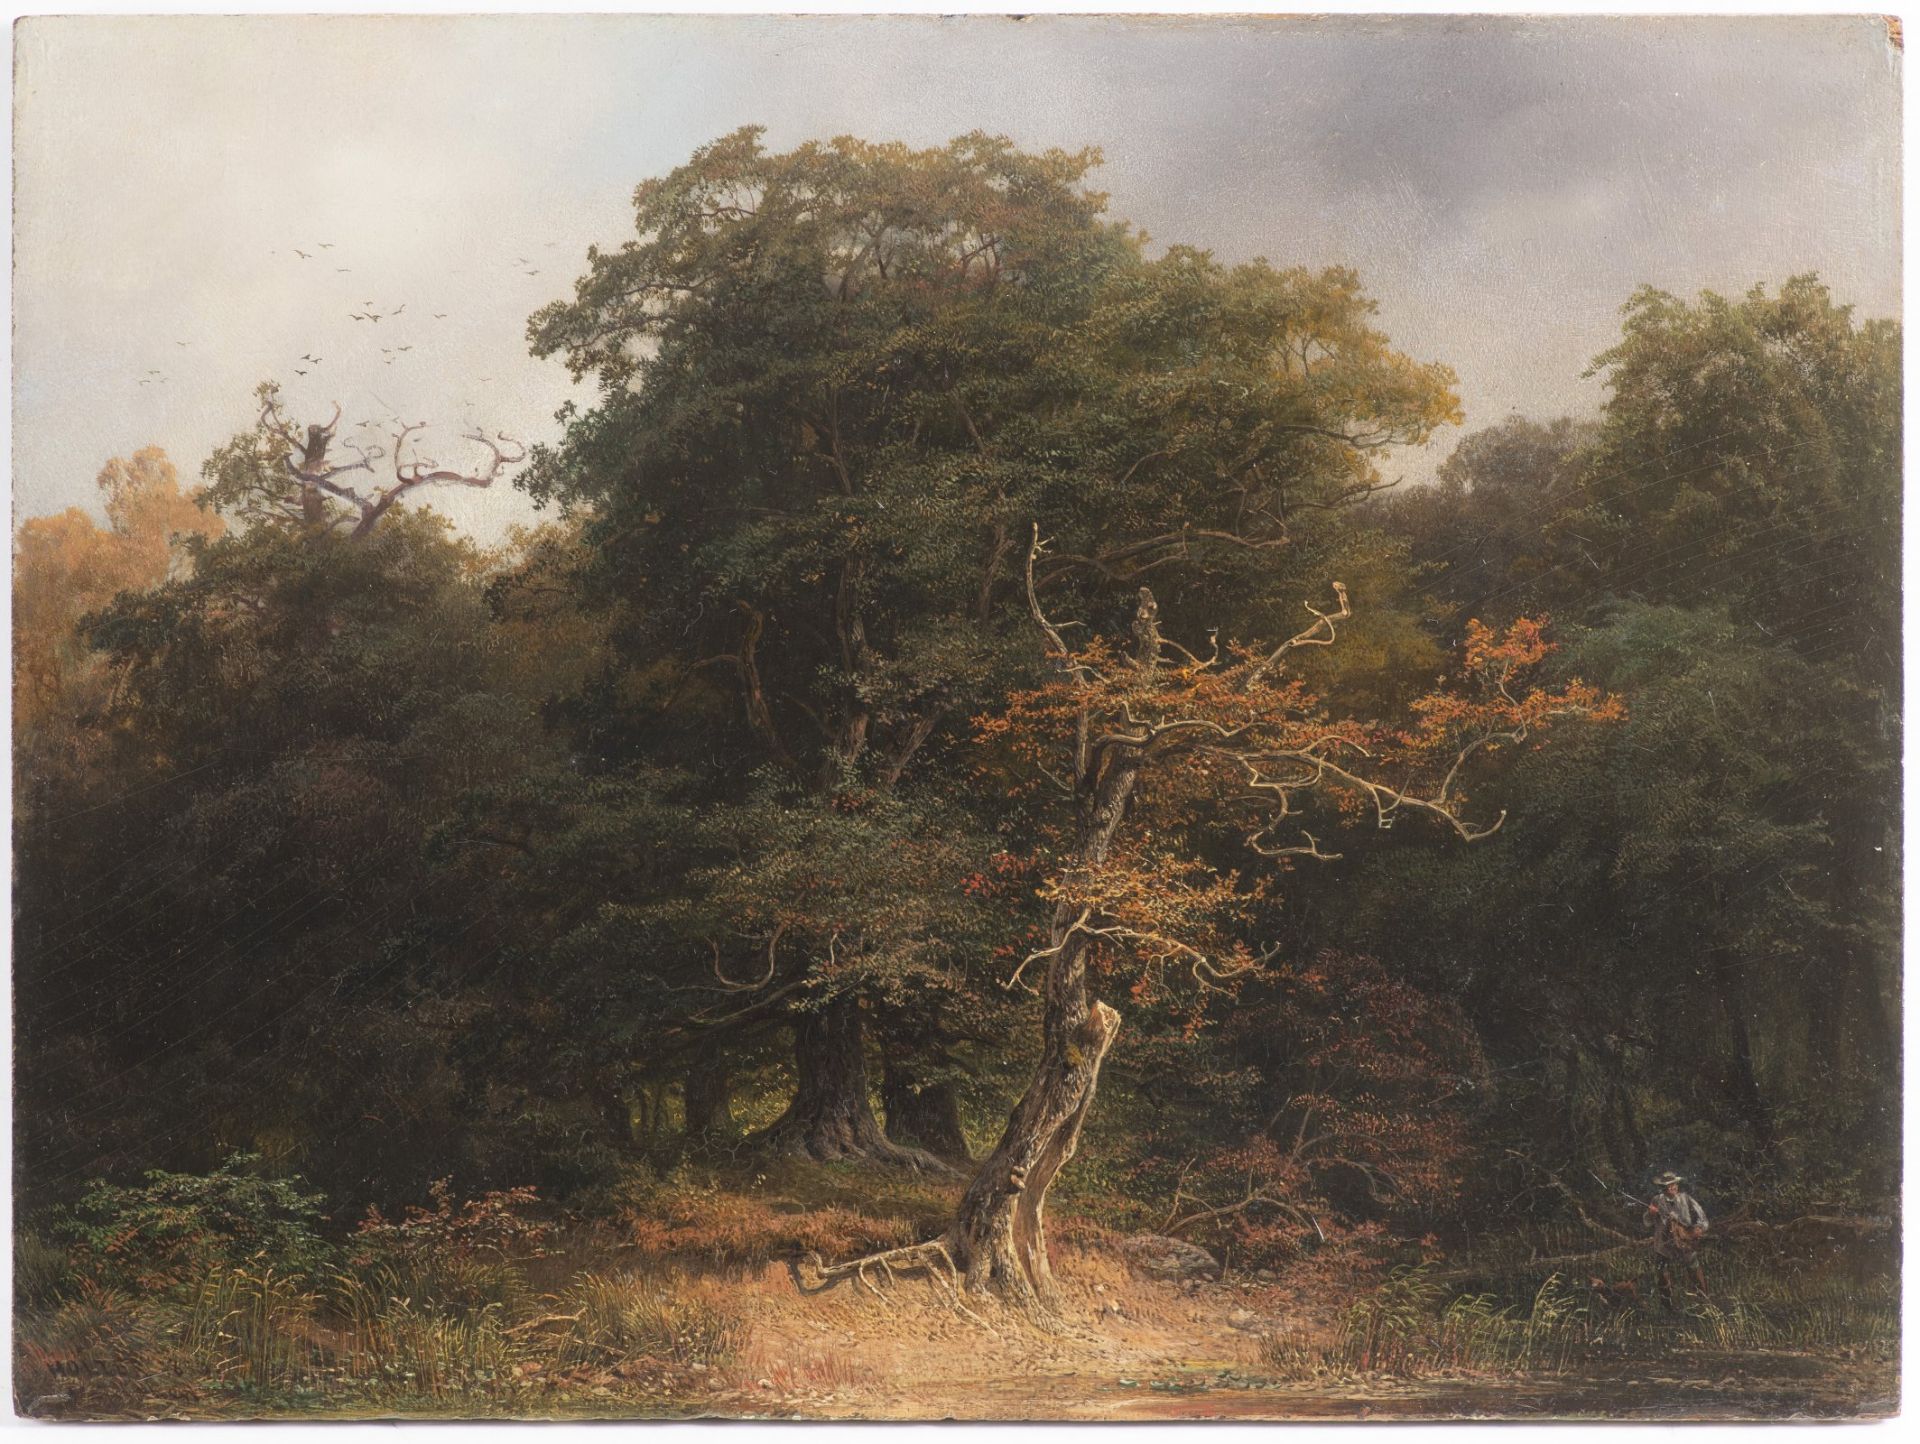 JOSEF HOLZER 1824 - 1876: FOREST LANDSCAPE 1856 Oil on wood 28,5 x 38,5 cm Signed: Lower left "